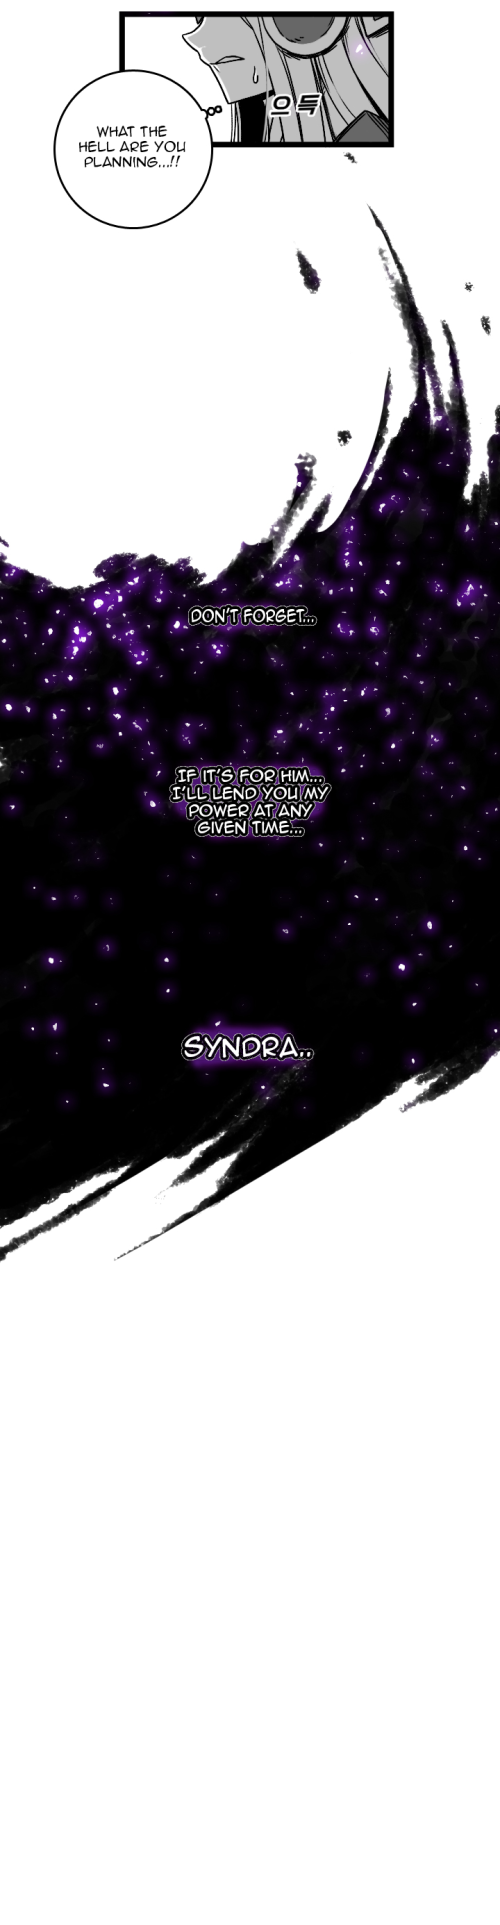 Syndra và zeds bình thường Cuộc SỐNG season 3 phần 17